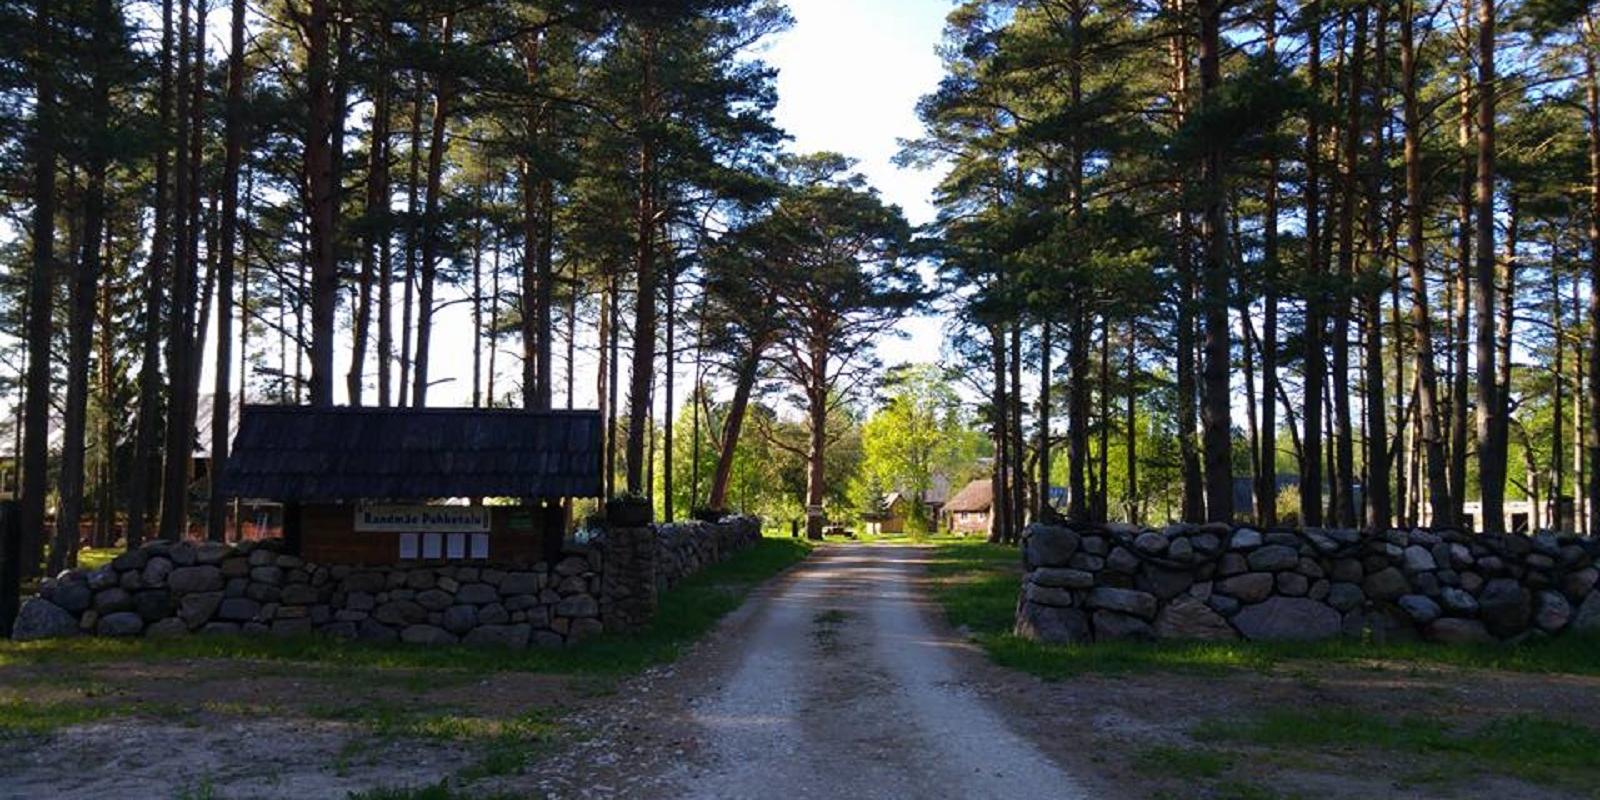 Randmäe Holiday Farm